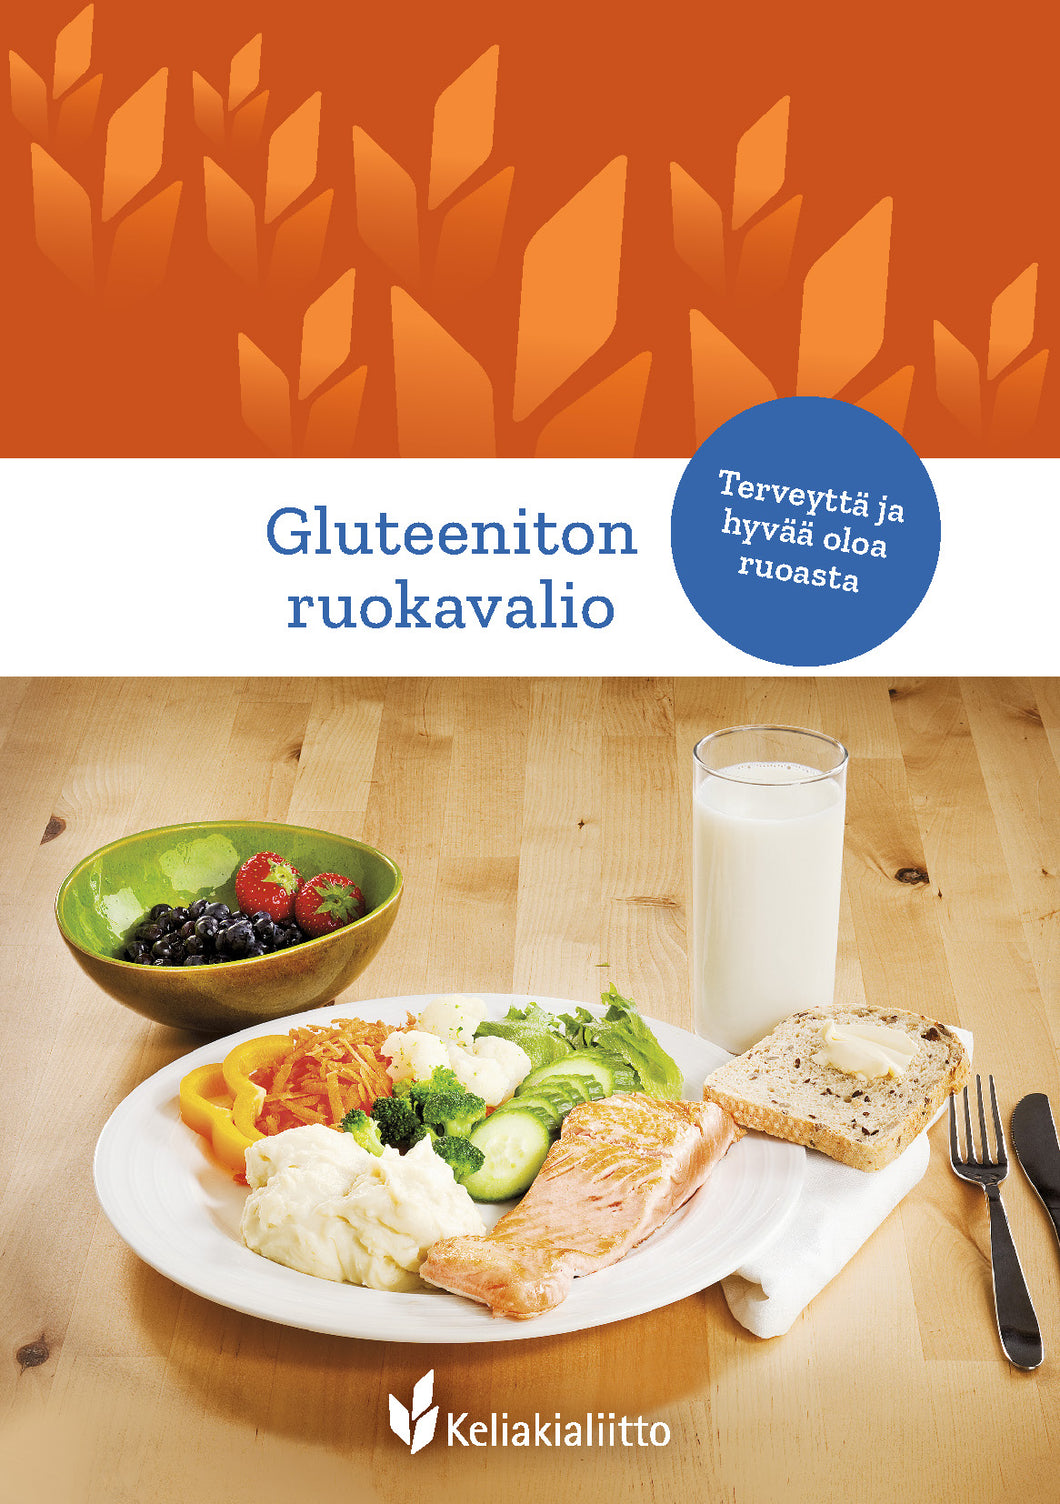 Gluteeniton ruokavalio – terveyttä ja hyvää oloa ruoasta